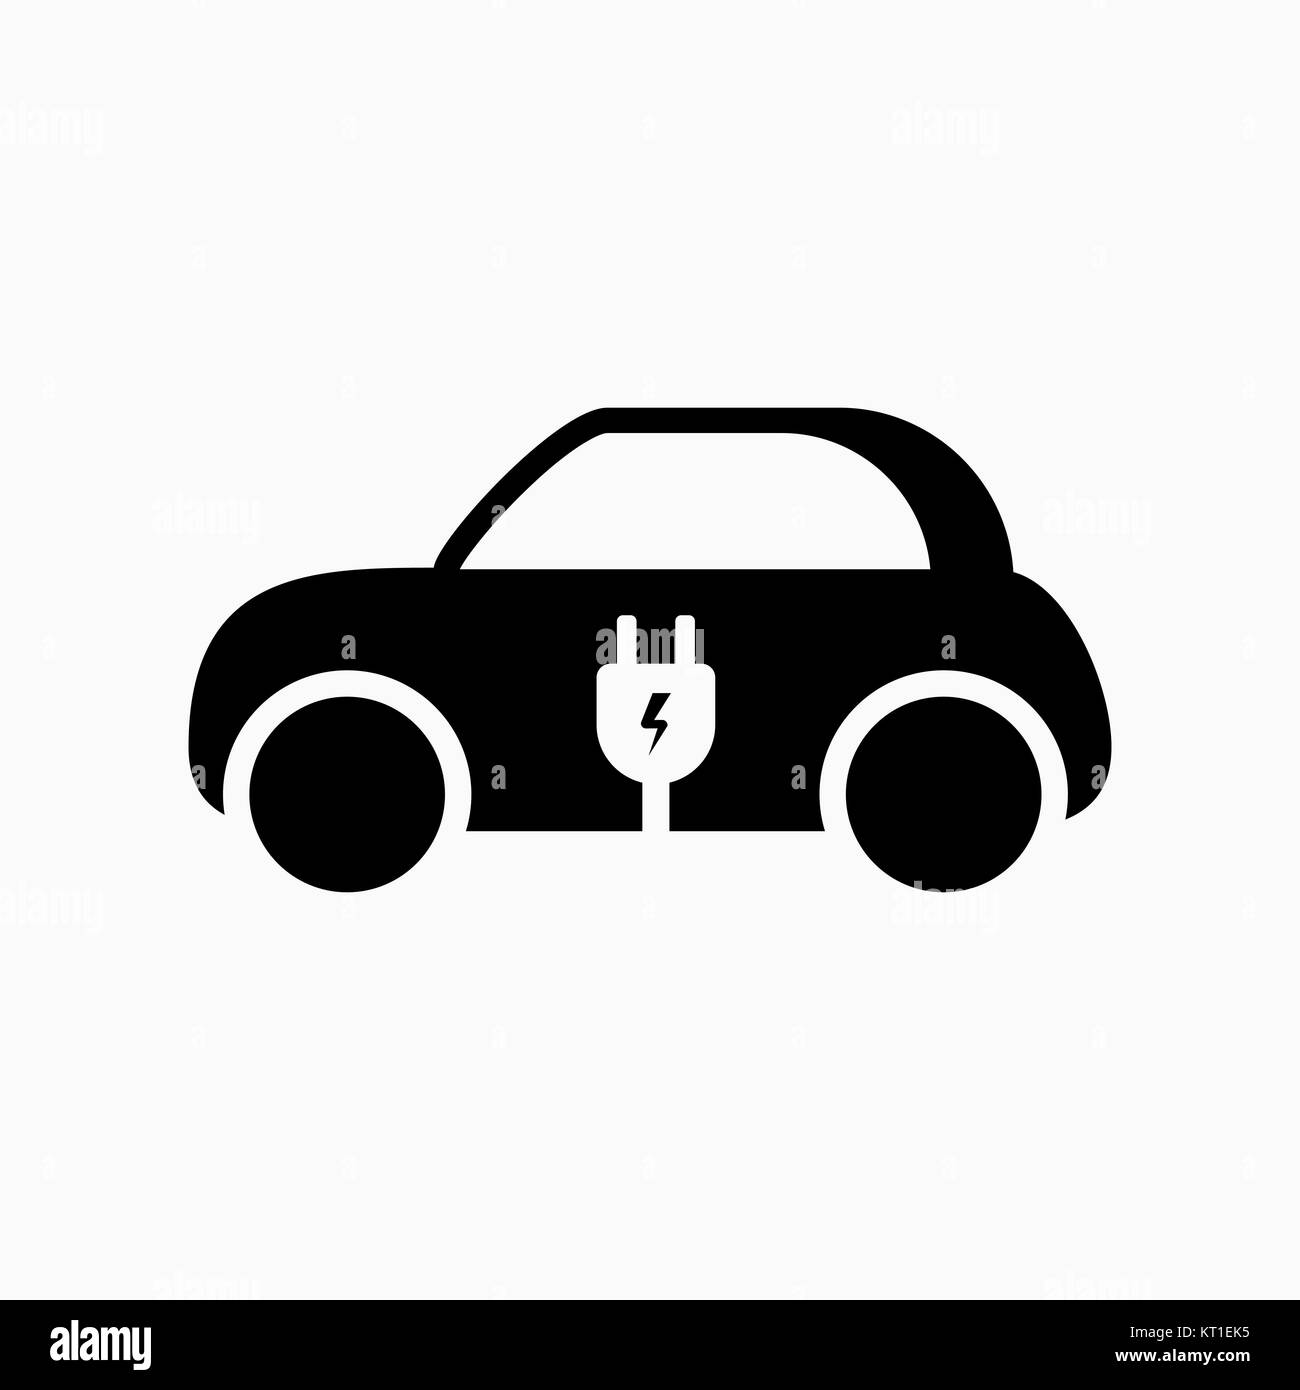 Electric car icon. vector illustration. E-car sign. Stock Vector